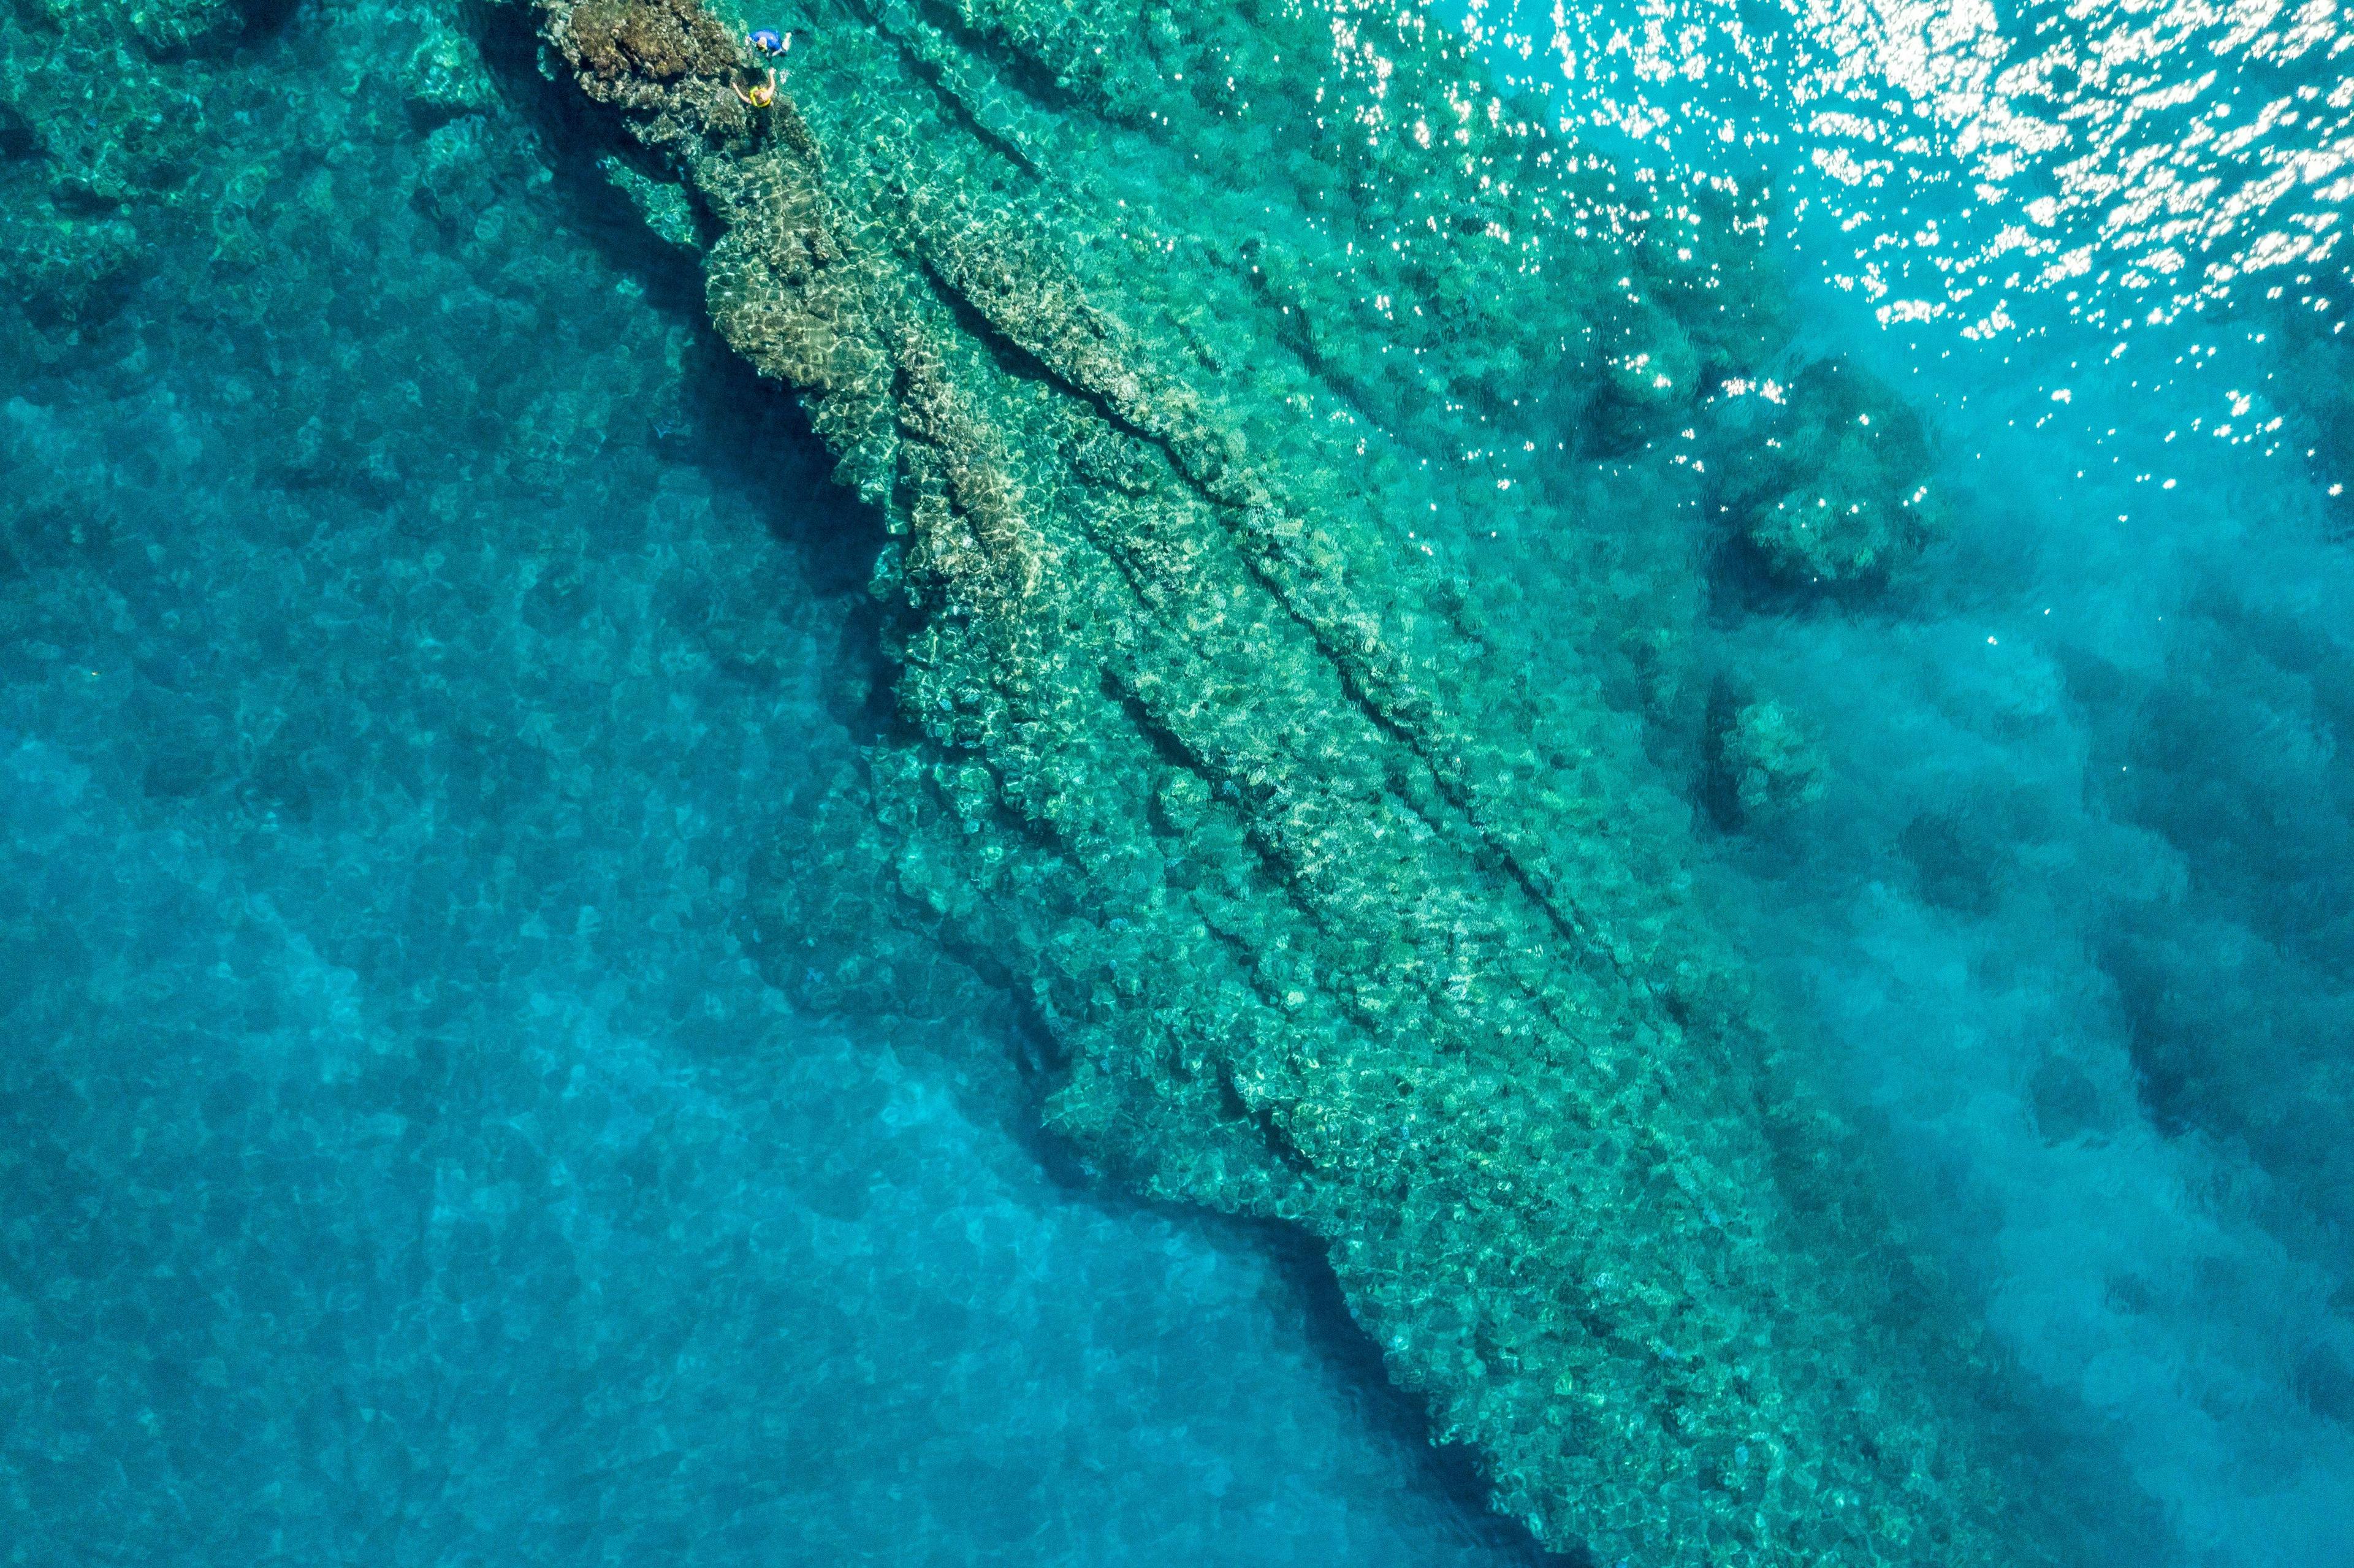 LetsQuip_Blog_Great_Barrier_Reef_scubaDiveGear_rental.jpg